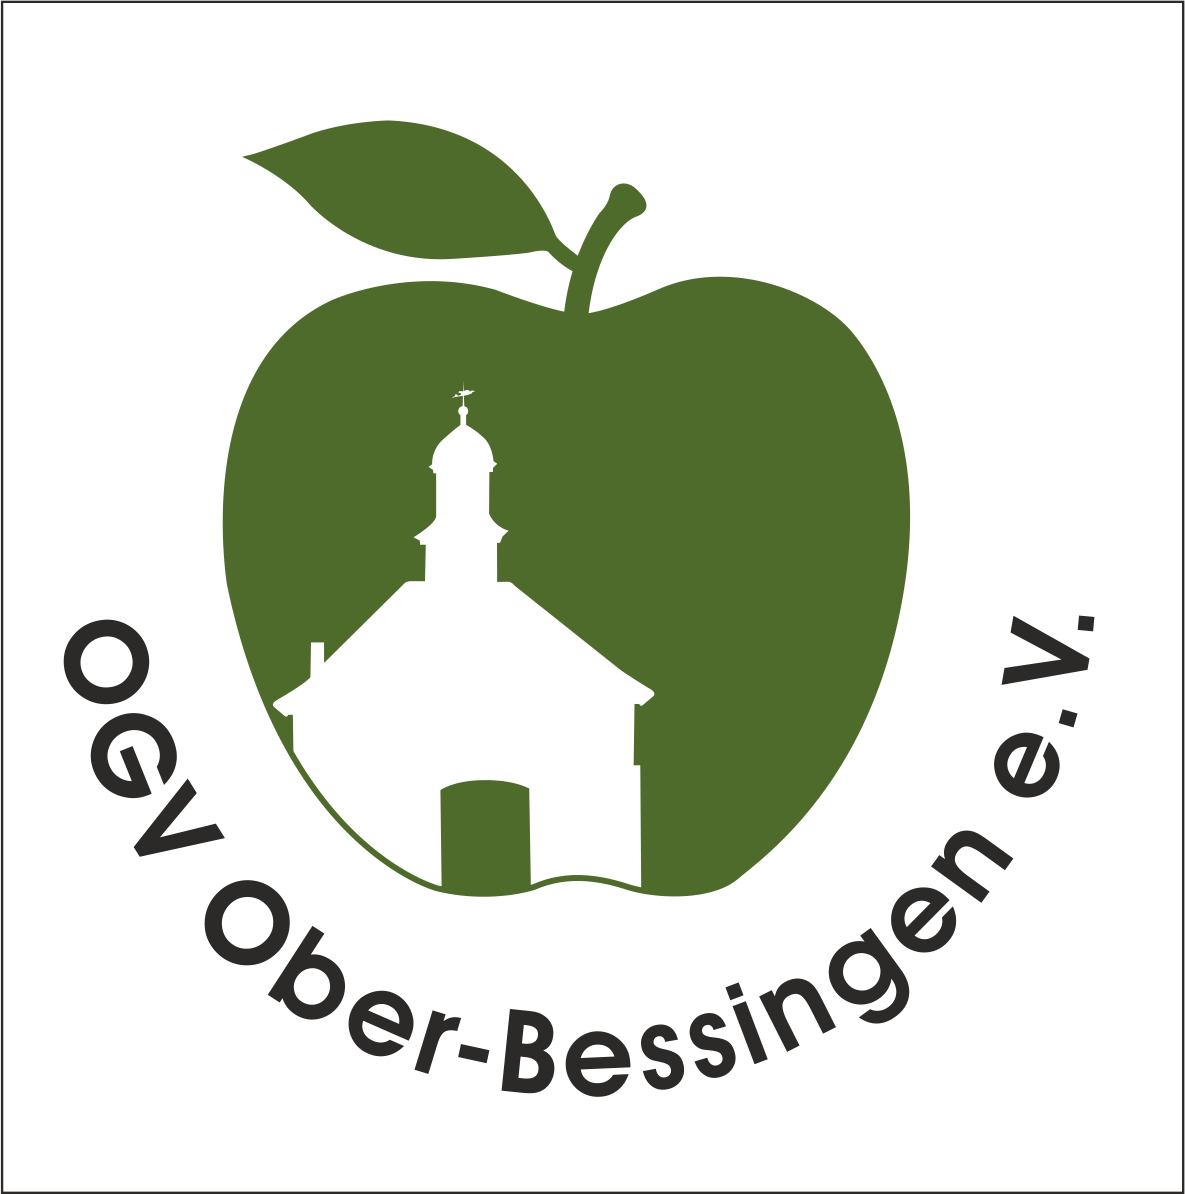 OGV Ober-Bessingen